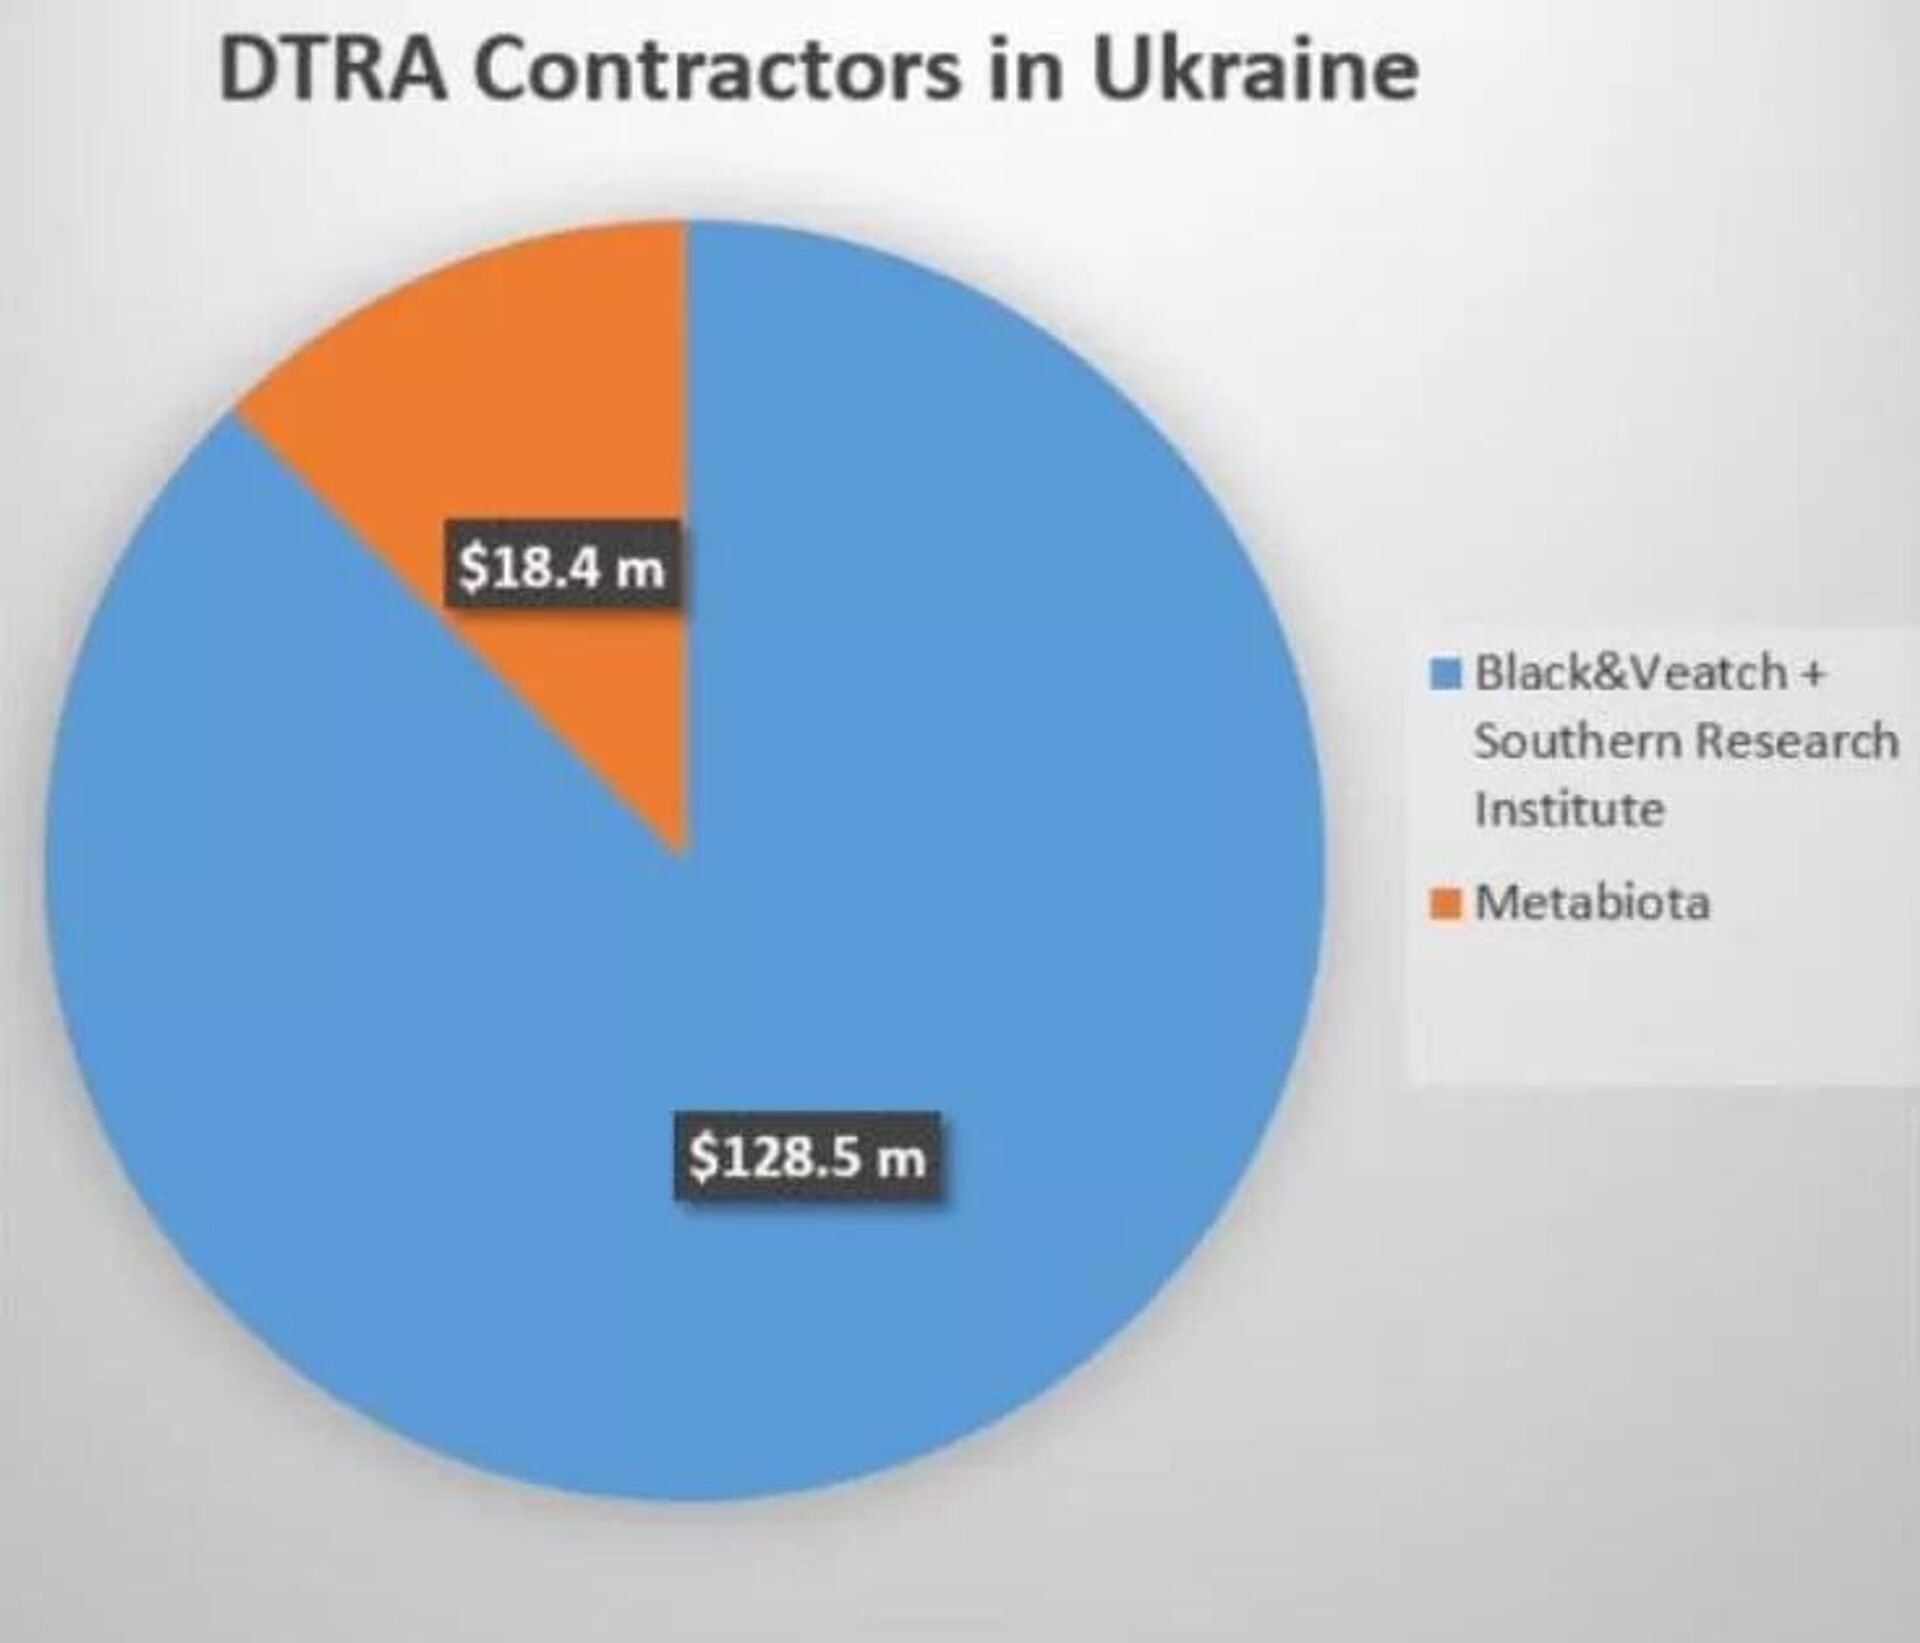 Valores destinados às empresas contratadas pela Agência de Defesa para a Redução de Ameaças (DTRA, na sigla em inglês) na Ucrânia - Sputnik Brasil, 1920, 15.04.2022